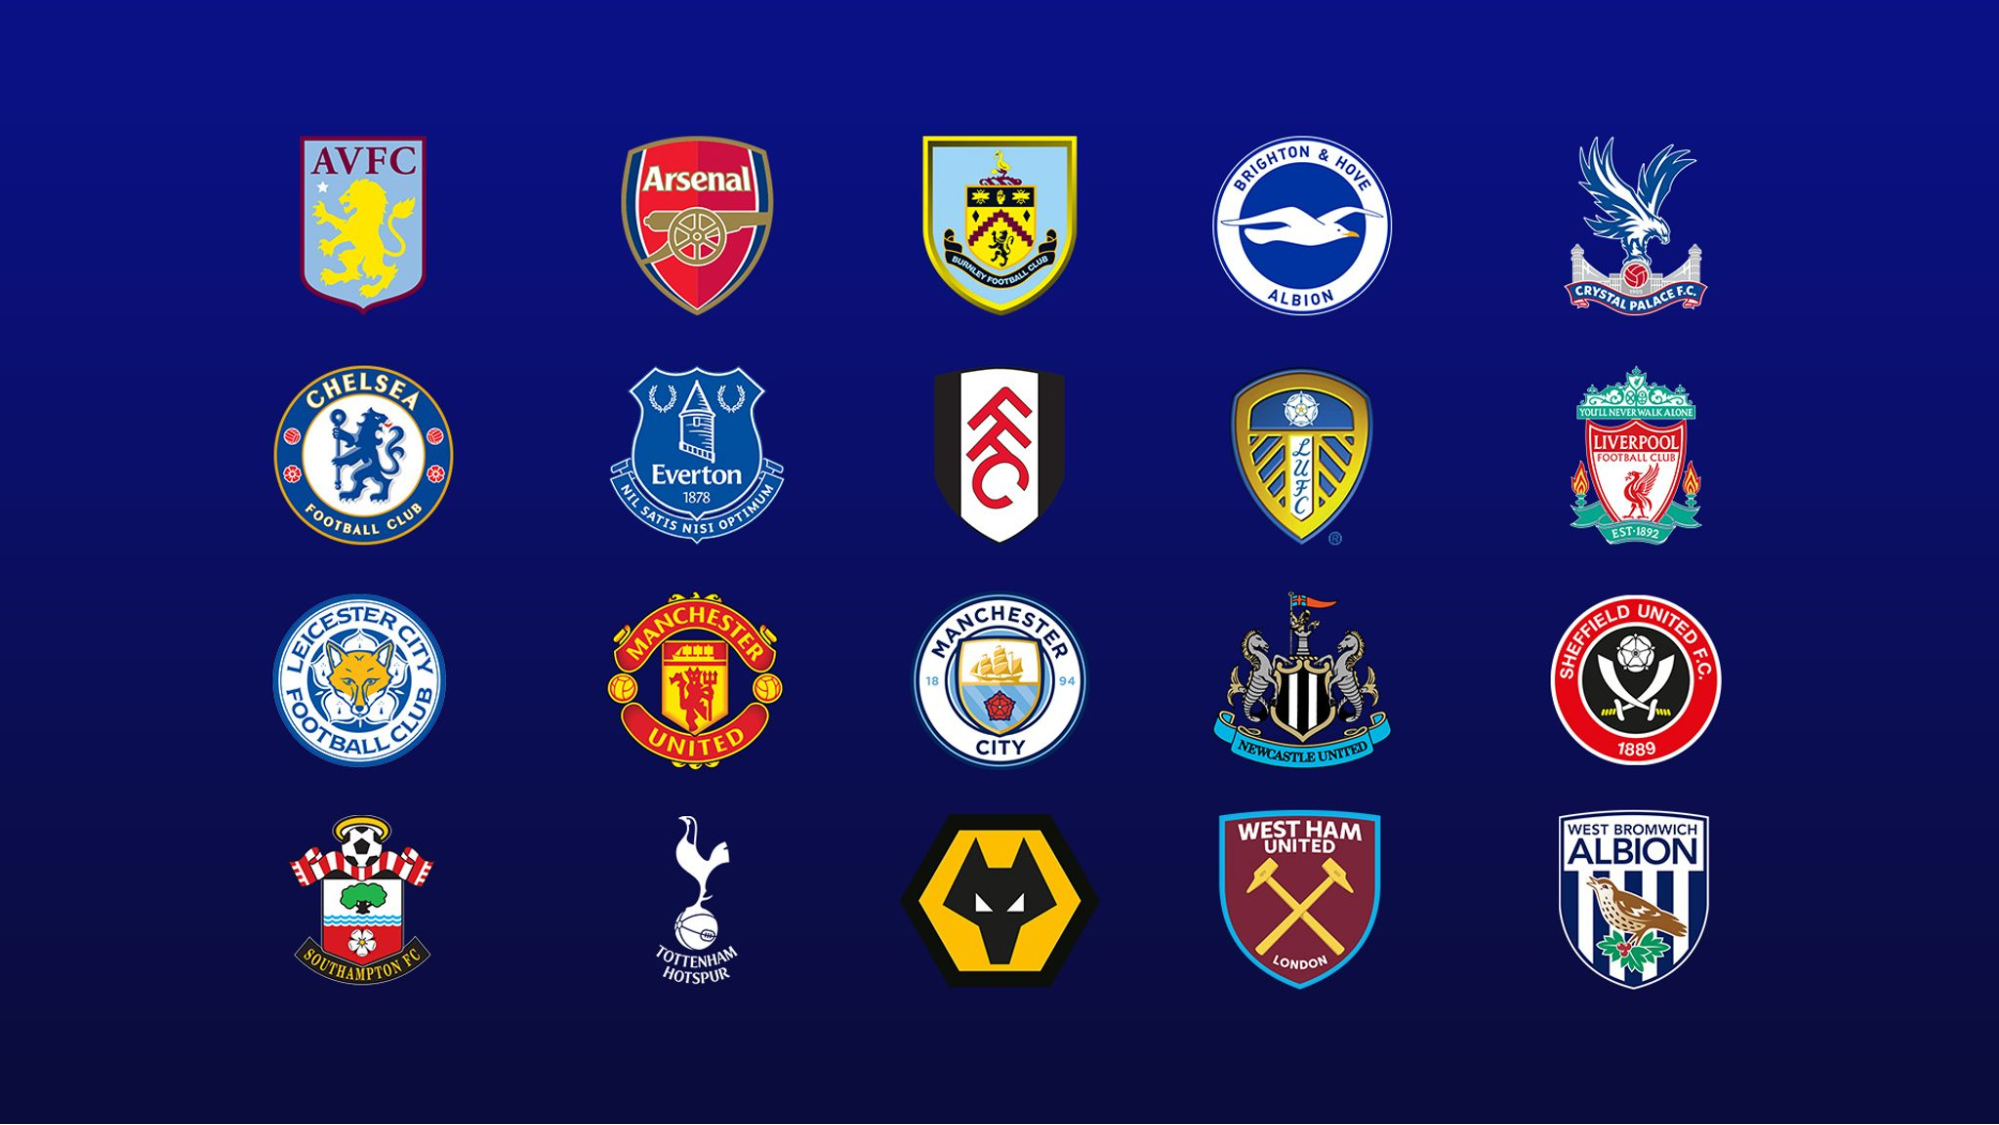 Thành viên của Premier League là những câu lạc bộ thi đấu tại đây
